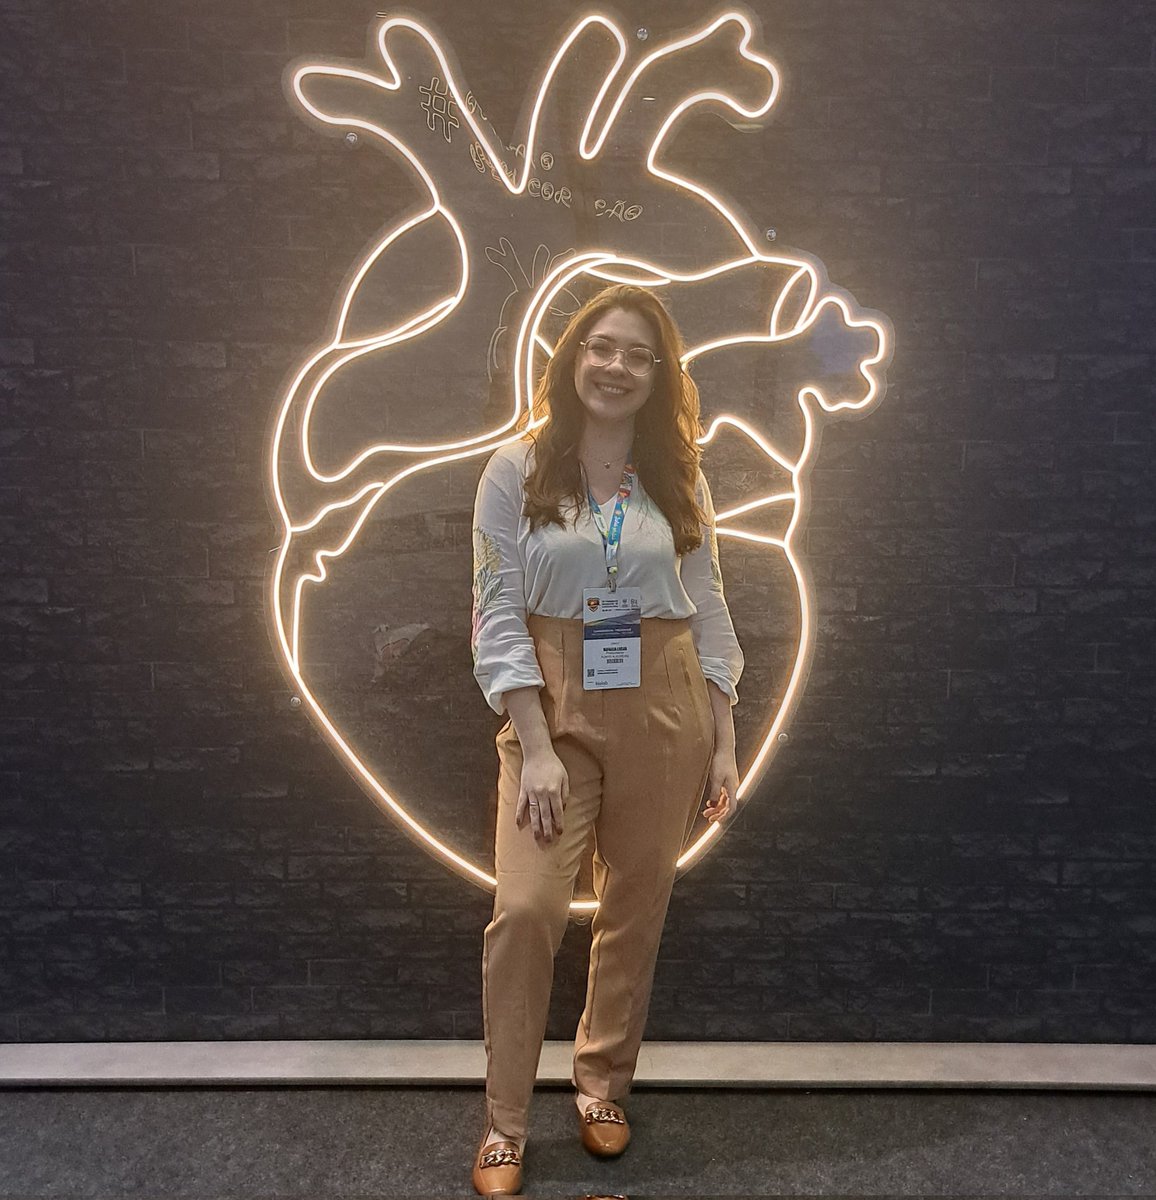 Oie! Sou Rafaela, nutricionista de formação e pesquisadora na área de Epidemiologia Cardiovascular. 

Atualmente investigo a relação entre diferentes DCVs e a capacidade funcional em nível populacional.

#InternationalDayOfWomenInScience
#MulheresEMeninasNaCiência